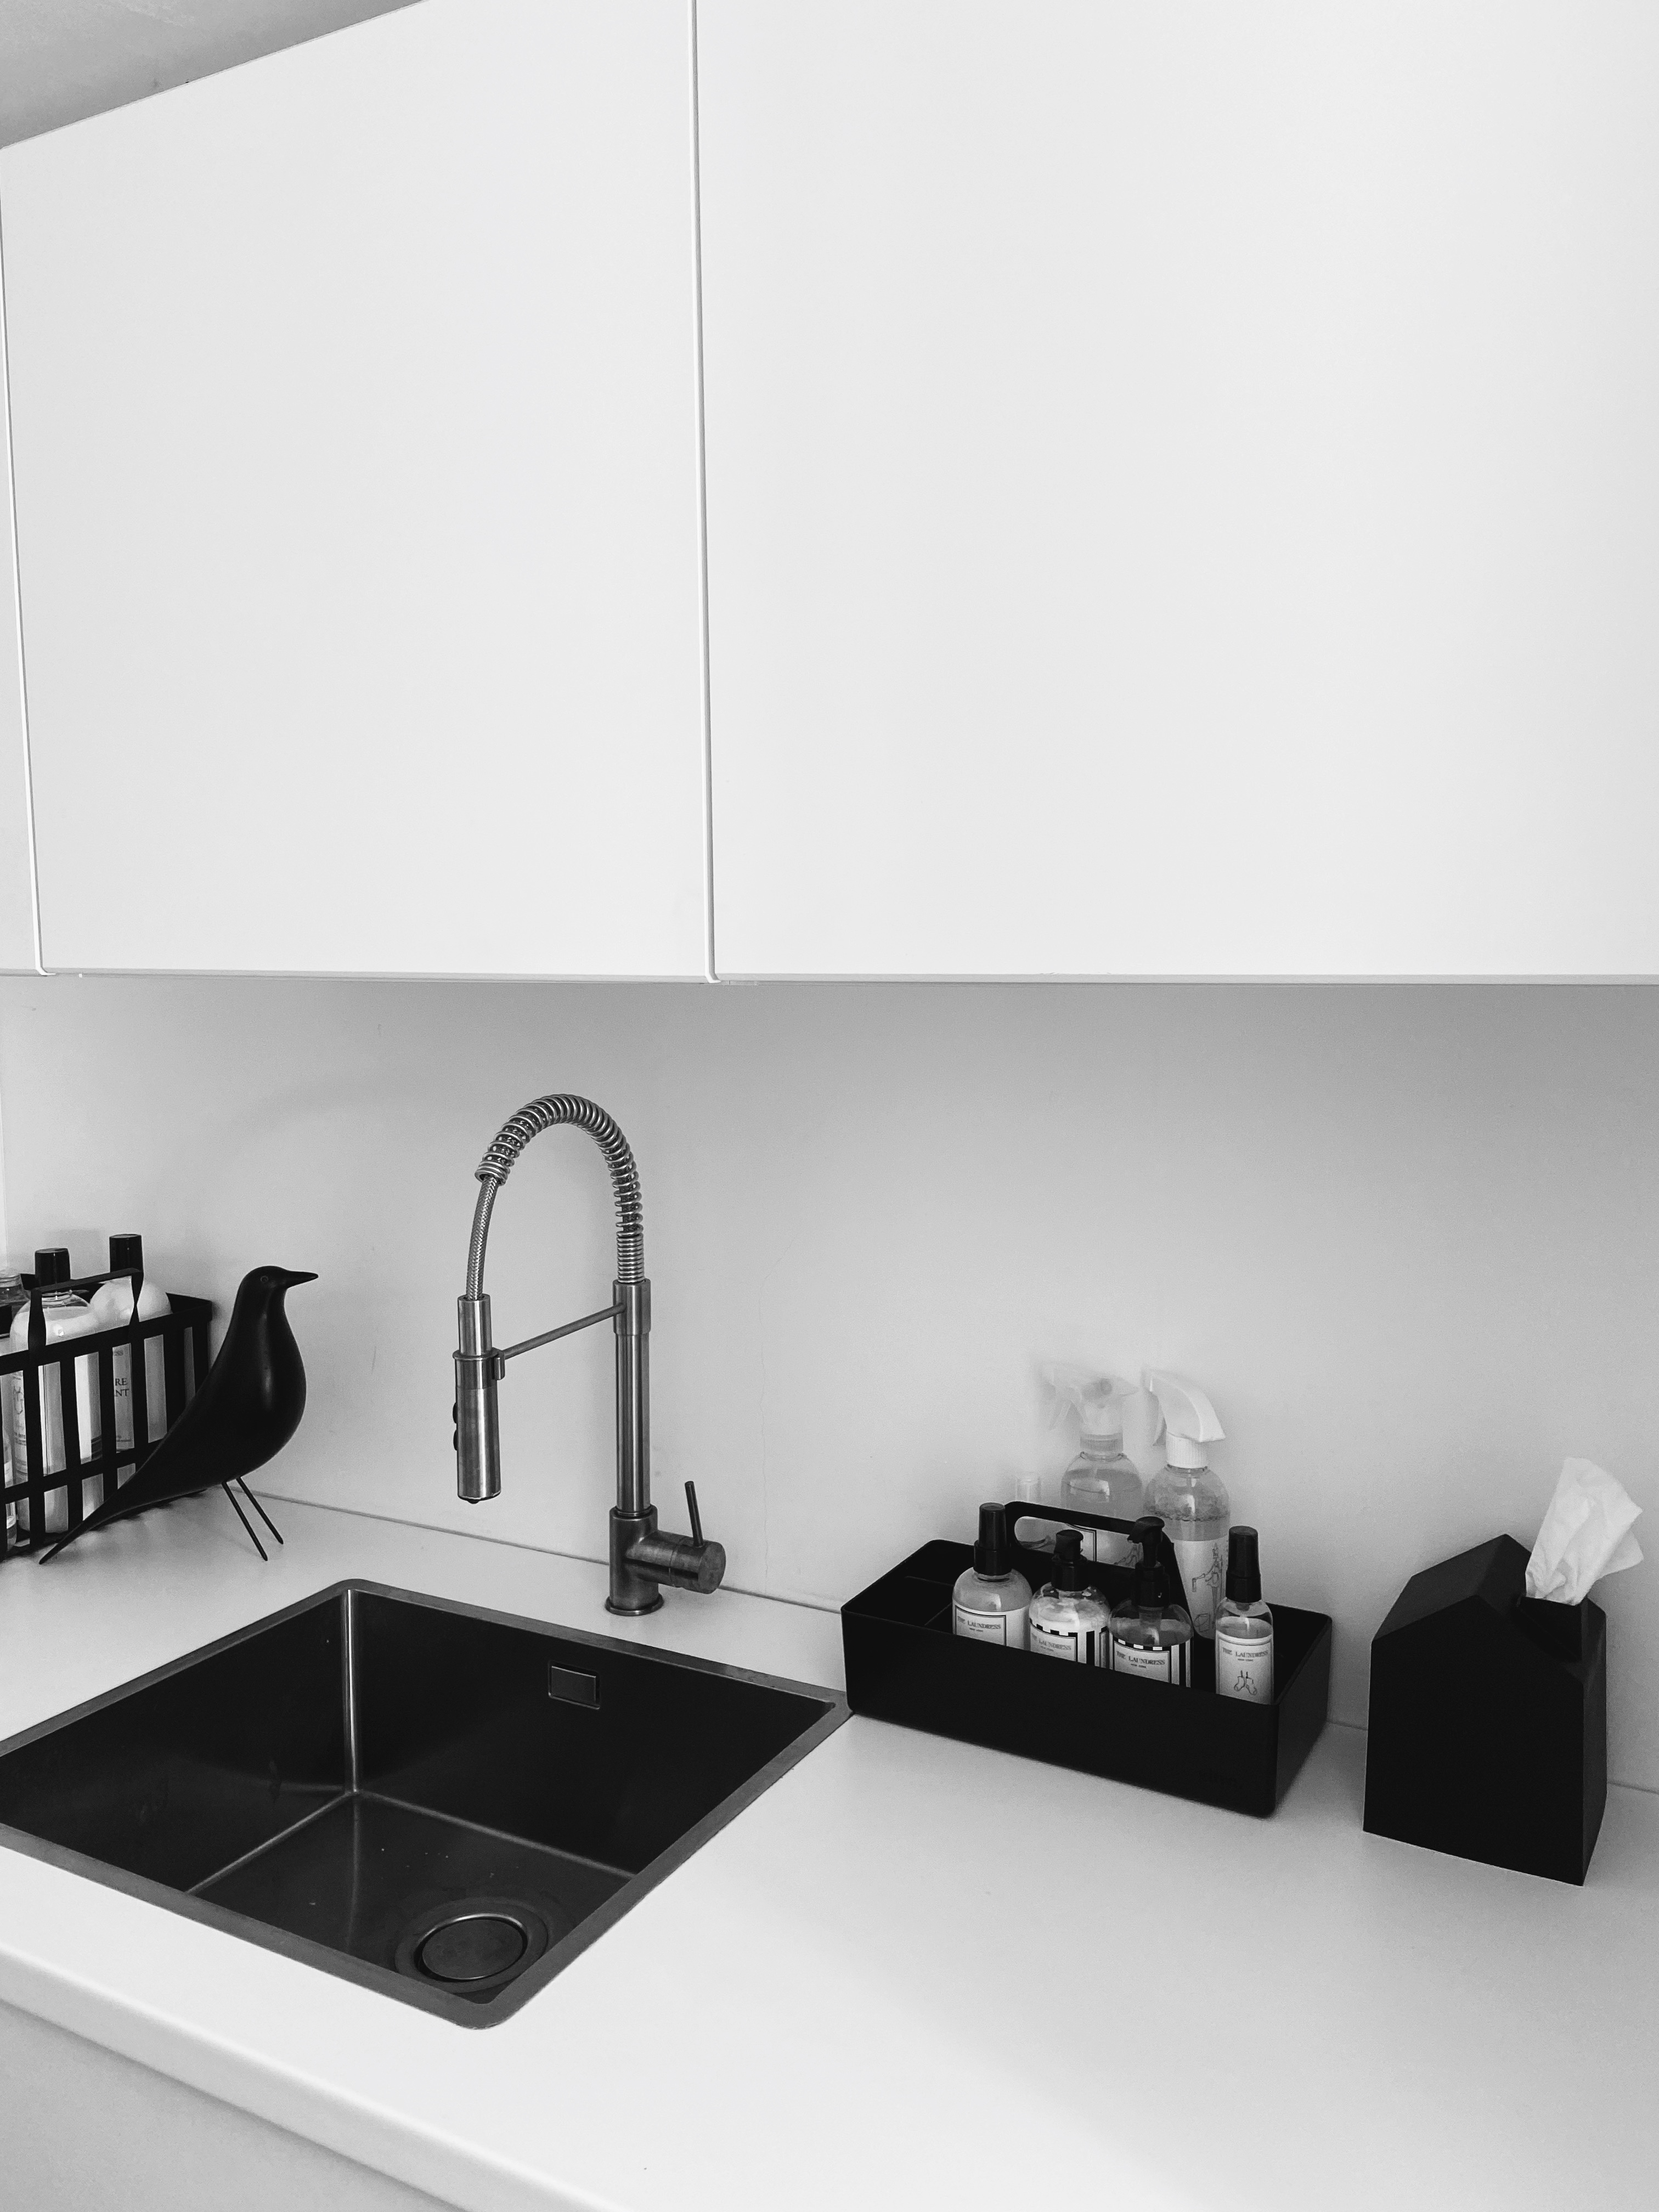 Waschküche Design weiß schwarz Aufbewahrung waschen Design Interior Interieur